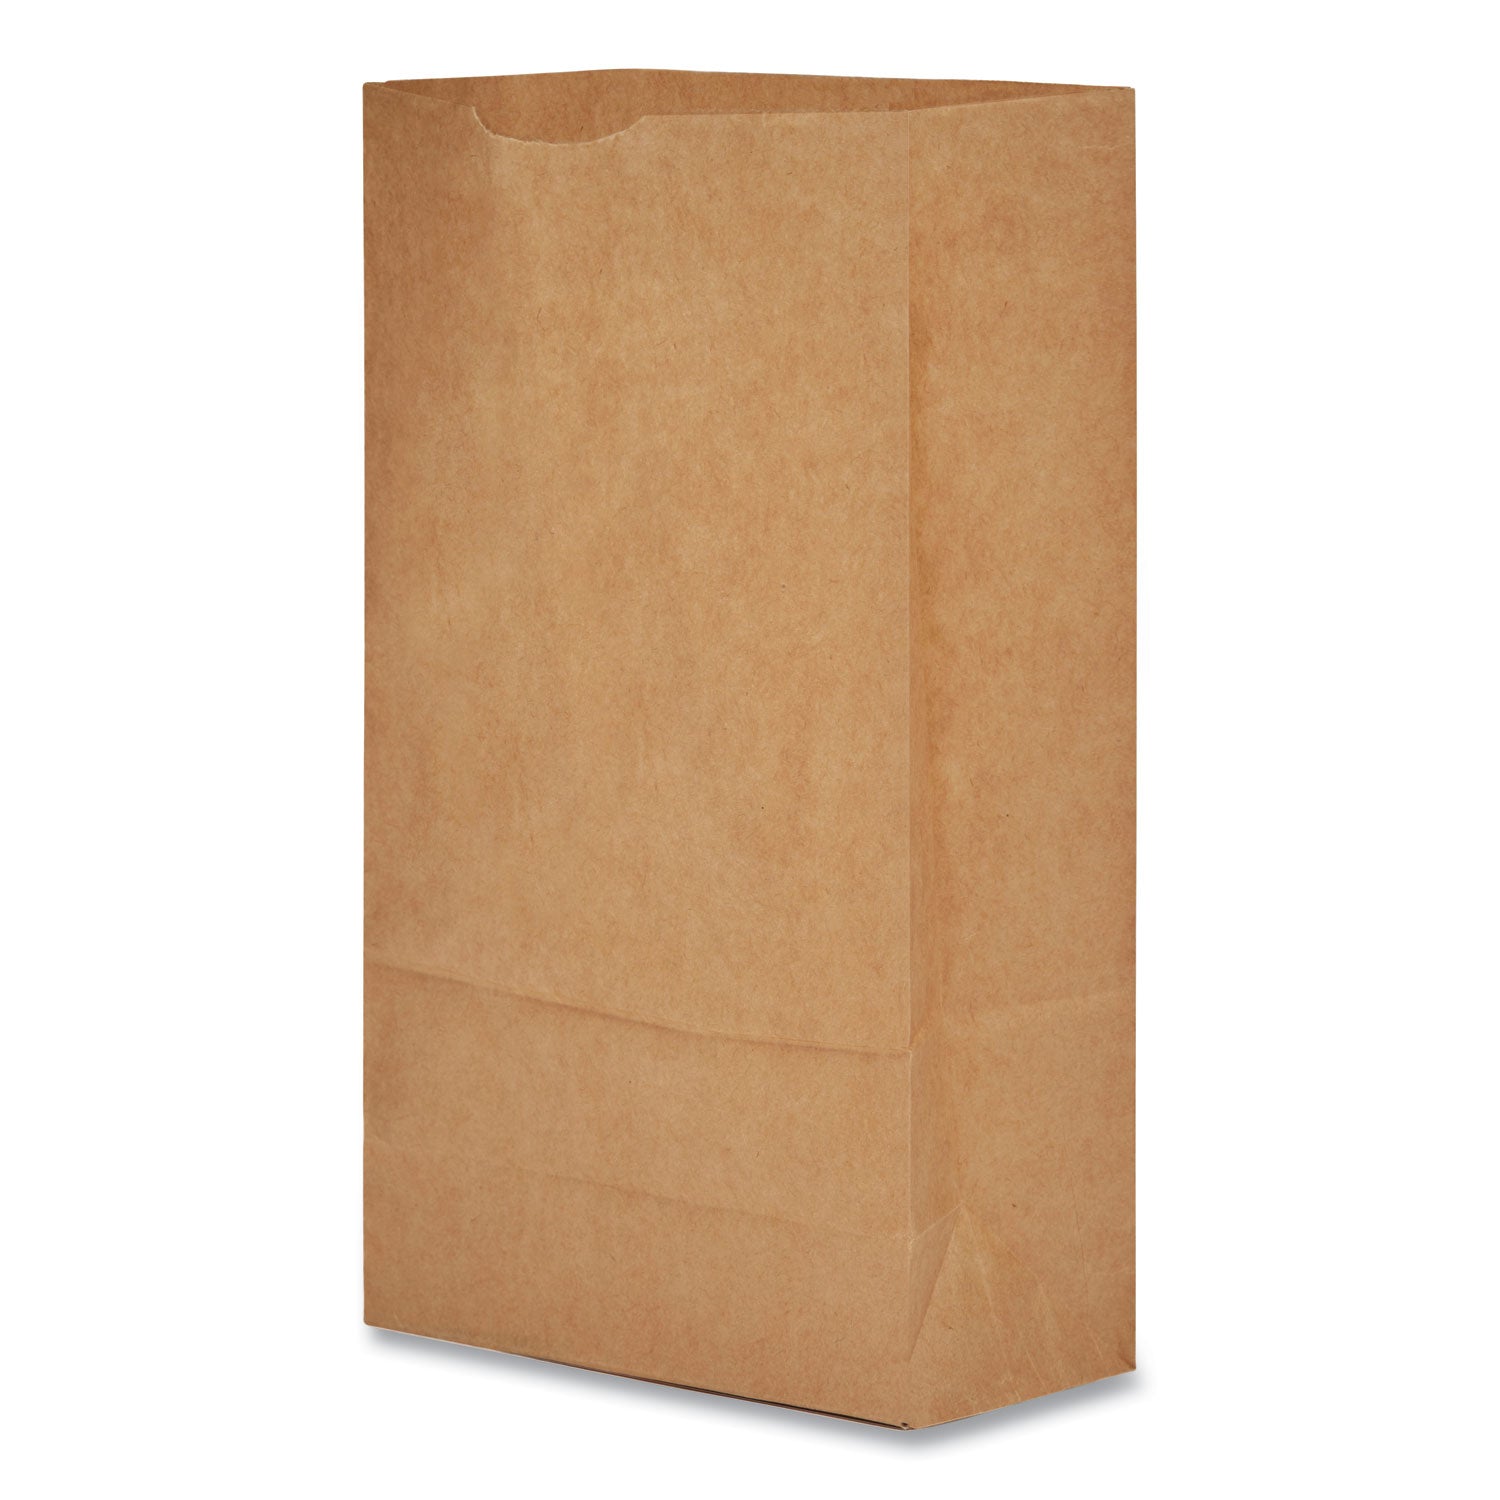 grocery-paper-bags-35-lb-capacity-#6-6-x-363-x-1106-kraft-500-bags_baggk6500 - 2